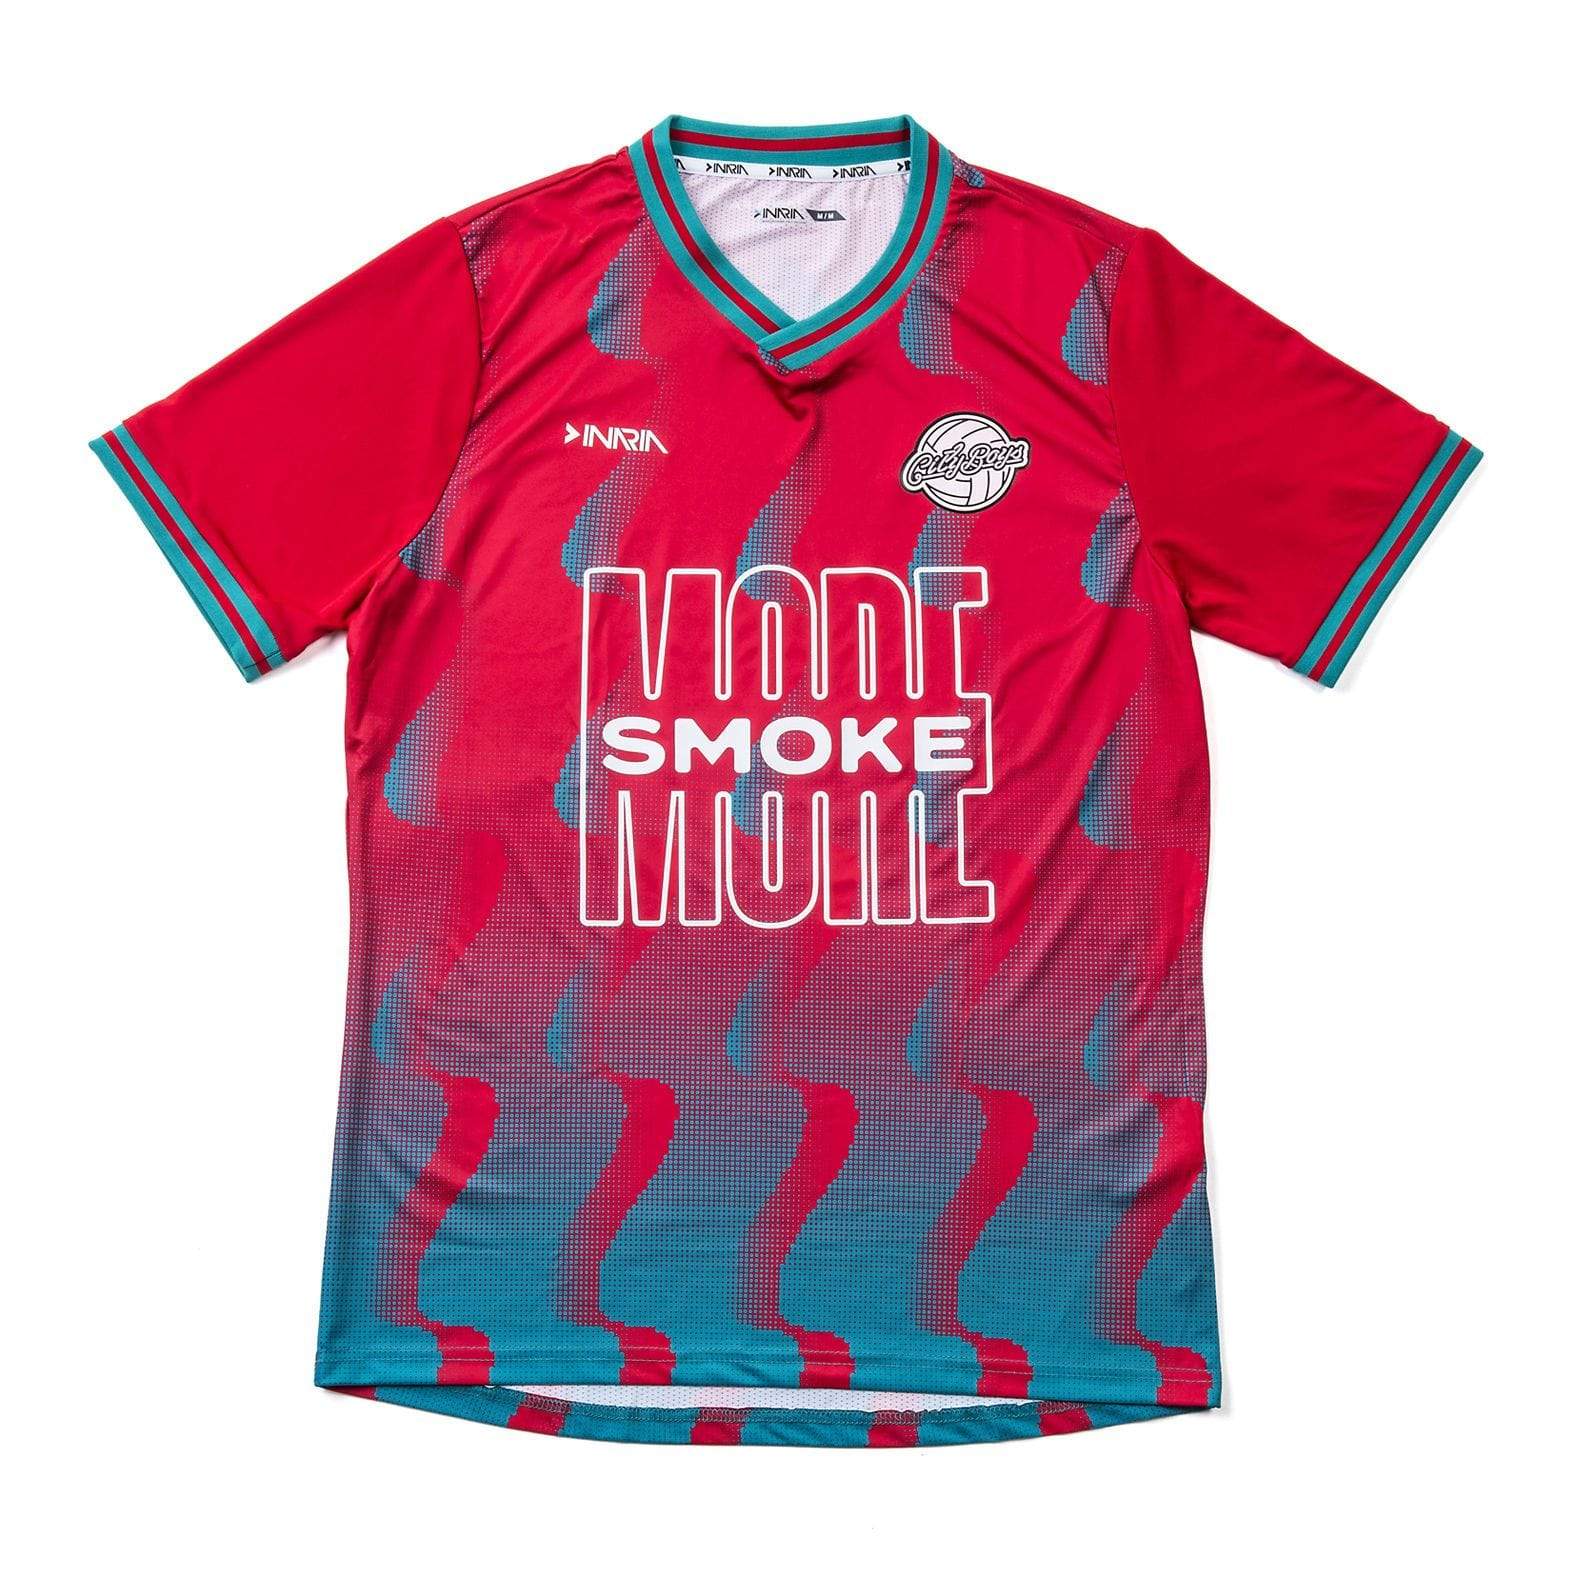 Hot Smoke City Boys FC v Inaria football shirt - Football Shirt Collective